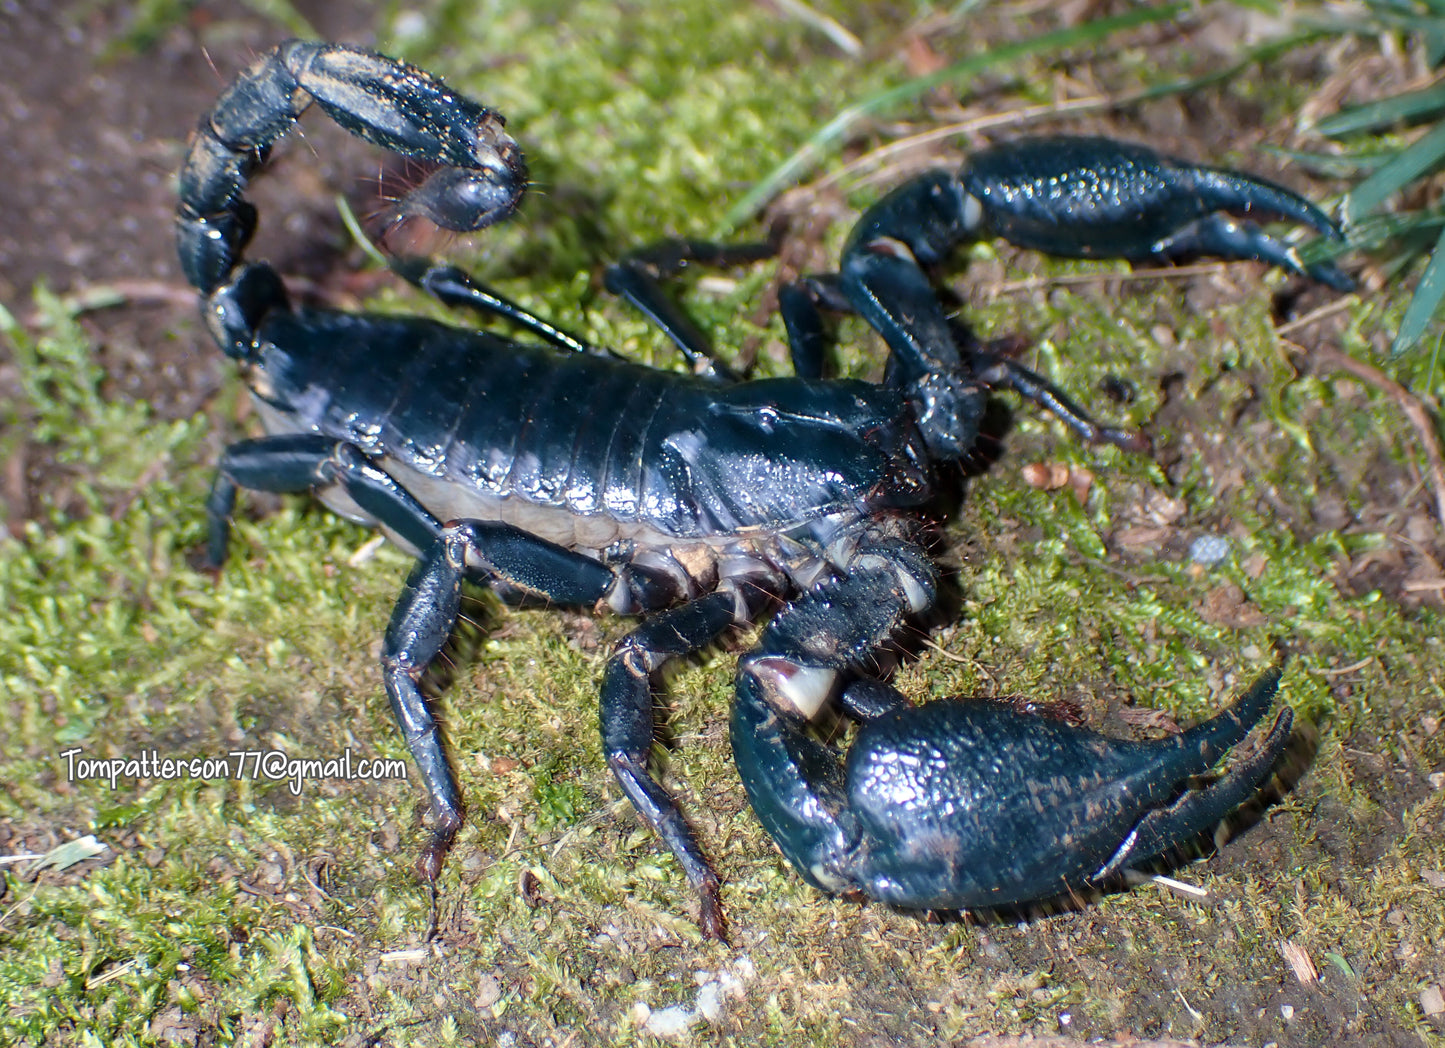 Heterometrus sp. Thailand forest scorpion